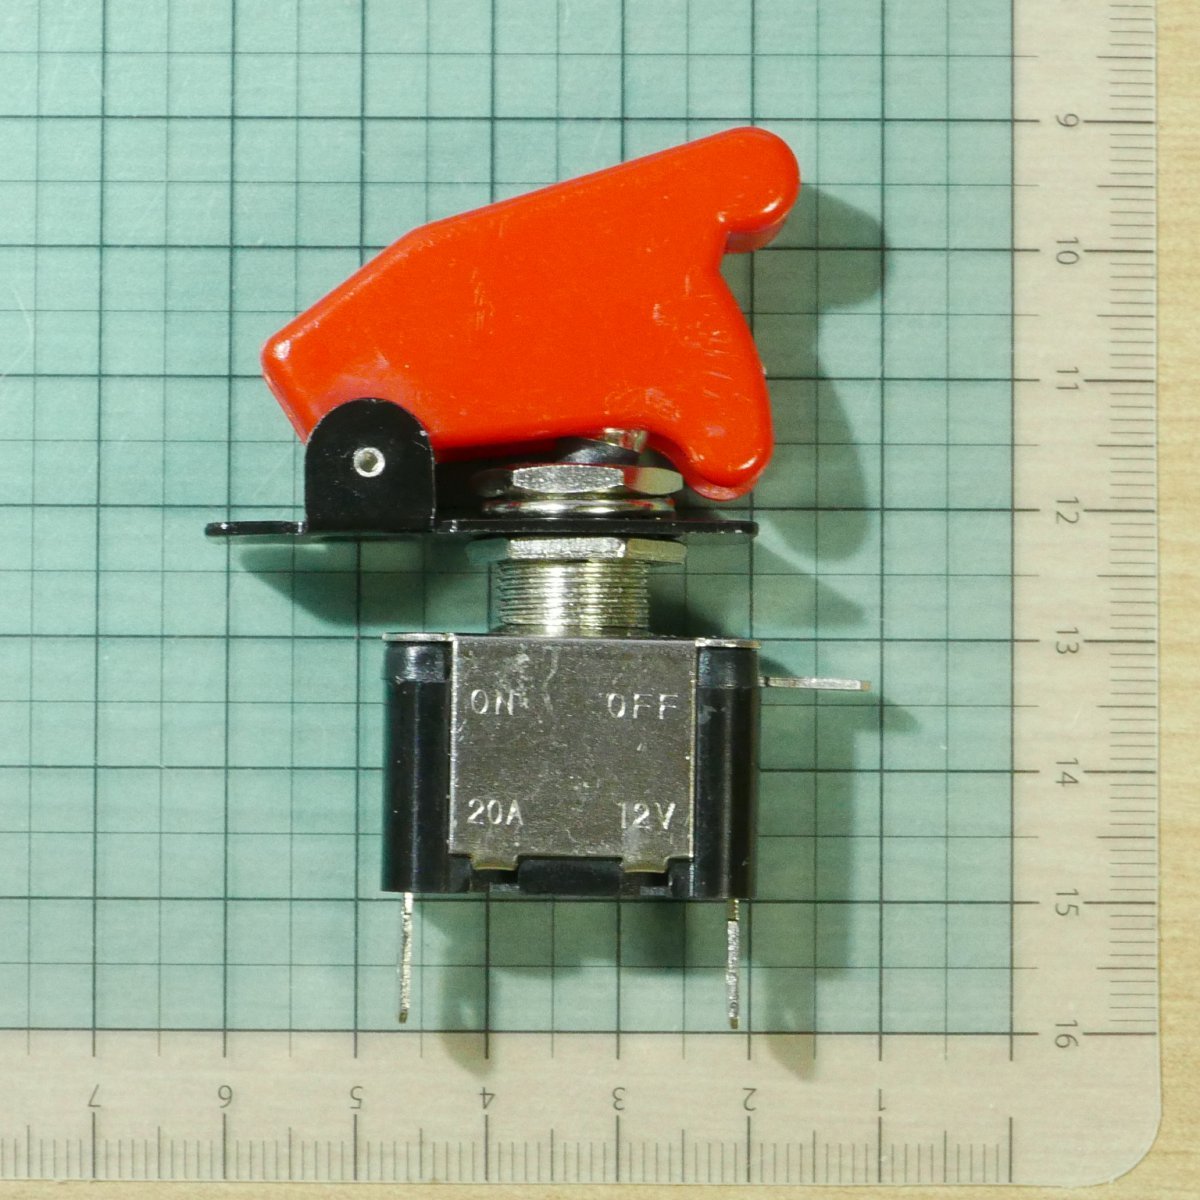 ガードカバー(赤)付属 先端赤色LEDトグルスイッチ ON-OFF ネジ径12mm 平端子 (フリップアップカバー ミサイルスイッチ)の画像5